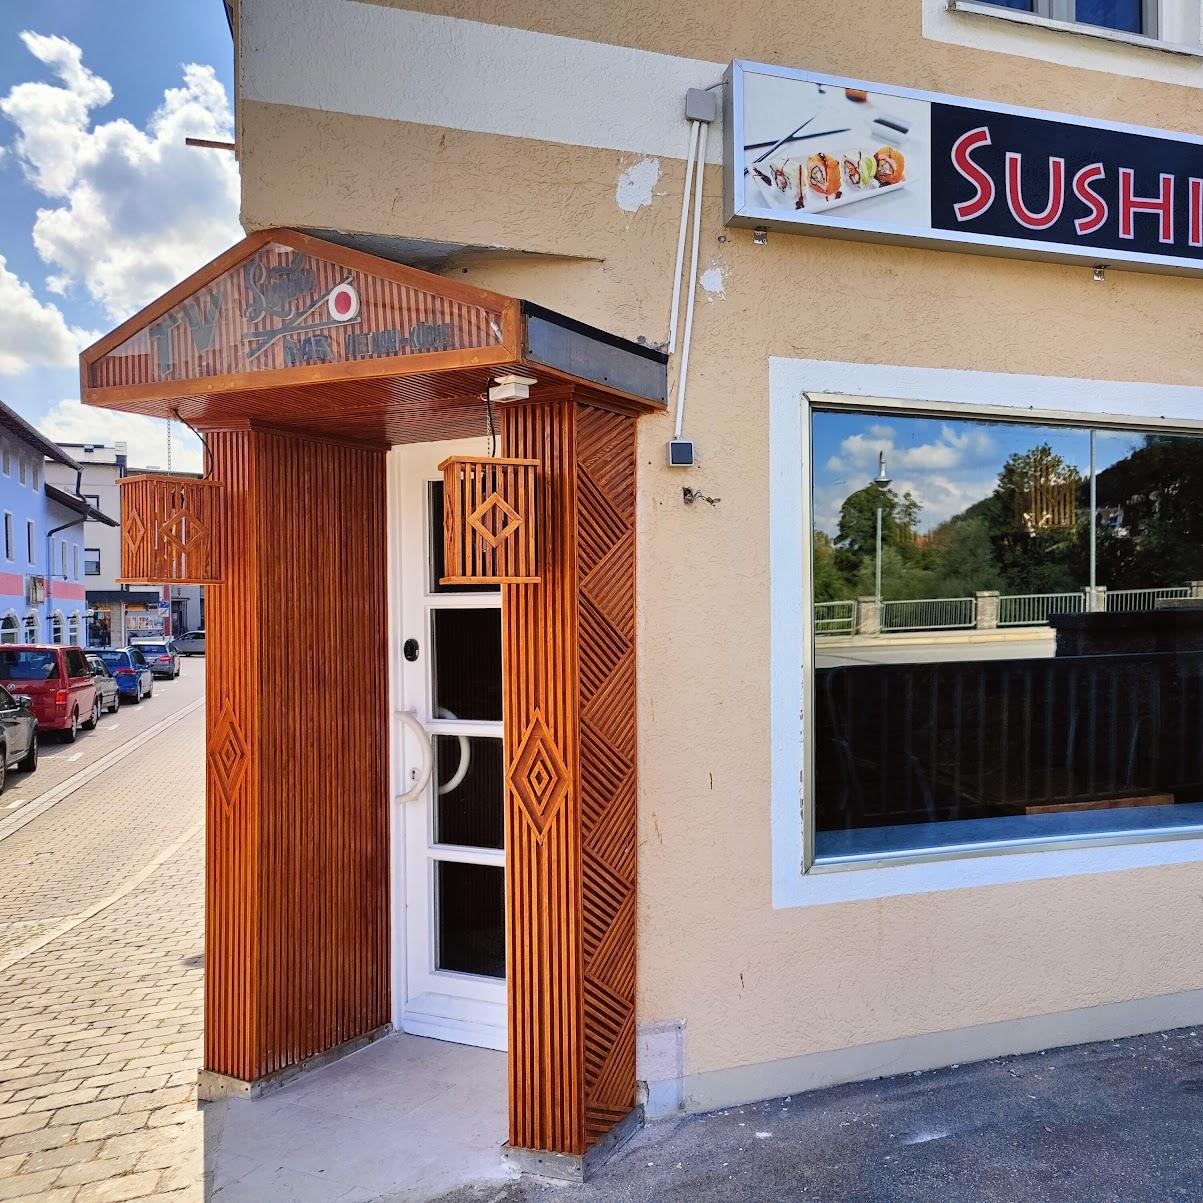 Restaurant "Sushi Bar - Vietnam Küche" in Trostberg